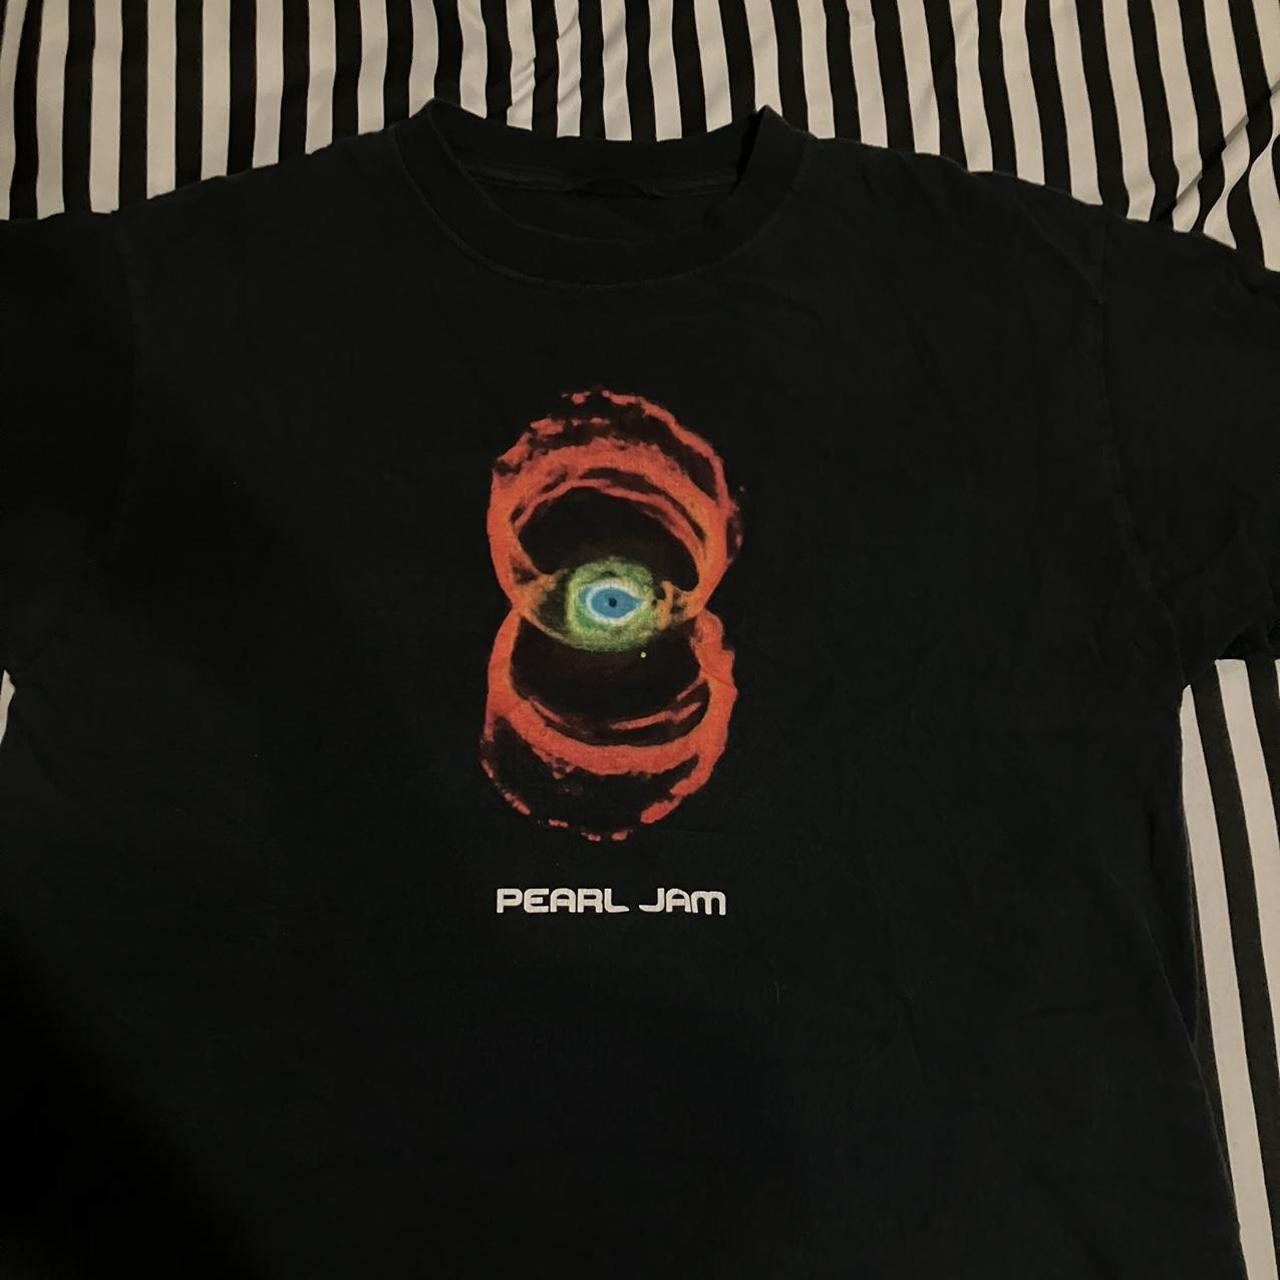 Vintage 2000's Pearl Jam Binaural Tee! The tee shirt... - Depop